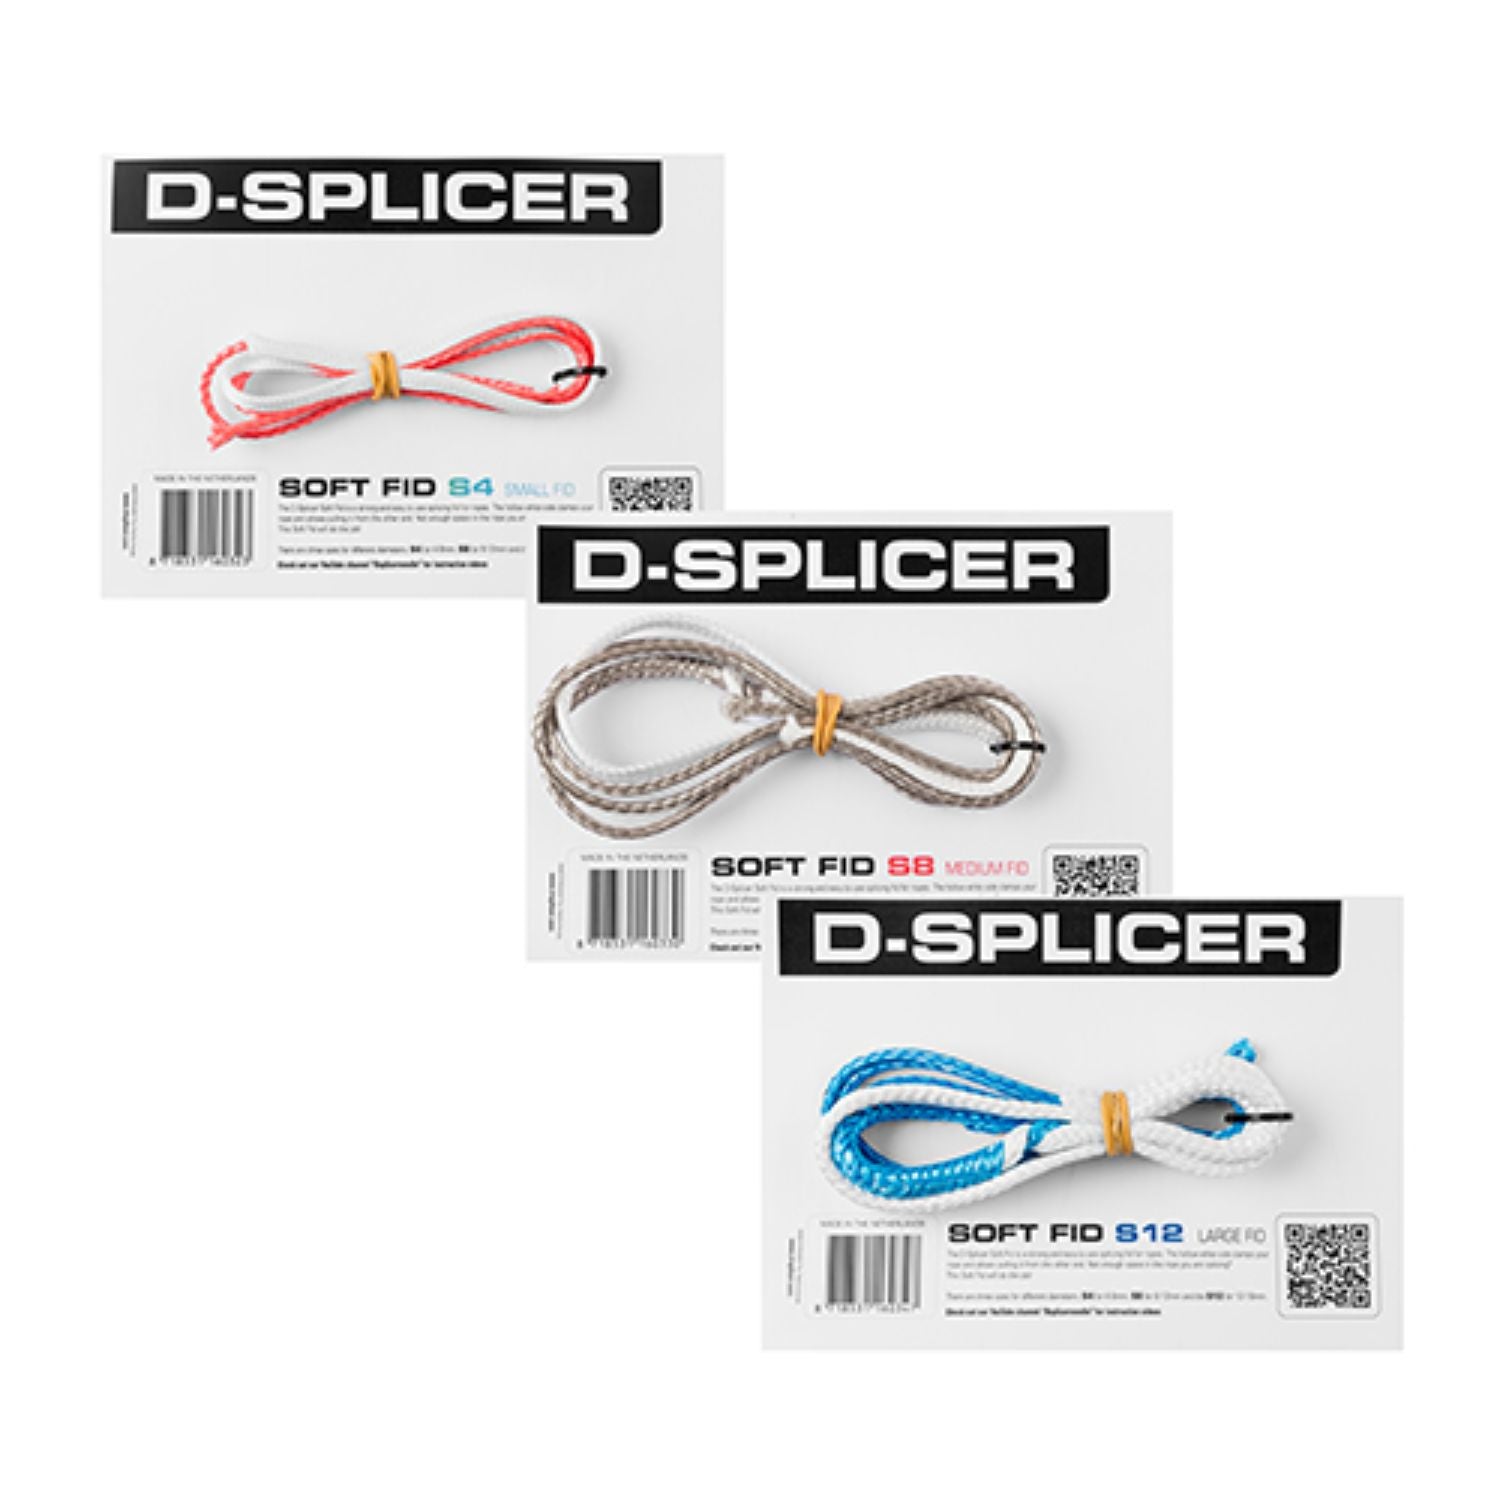 D-Splicer, S4 Softfid Splitsverktyg